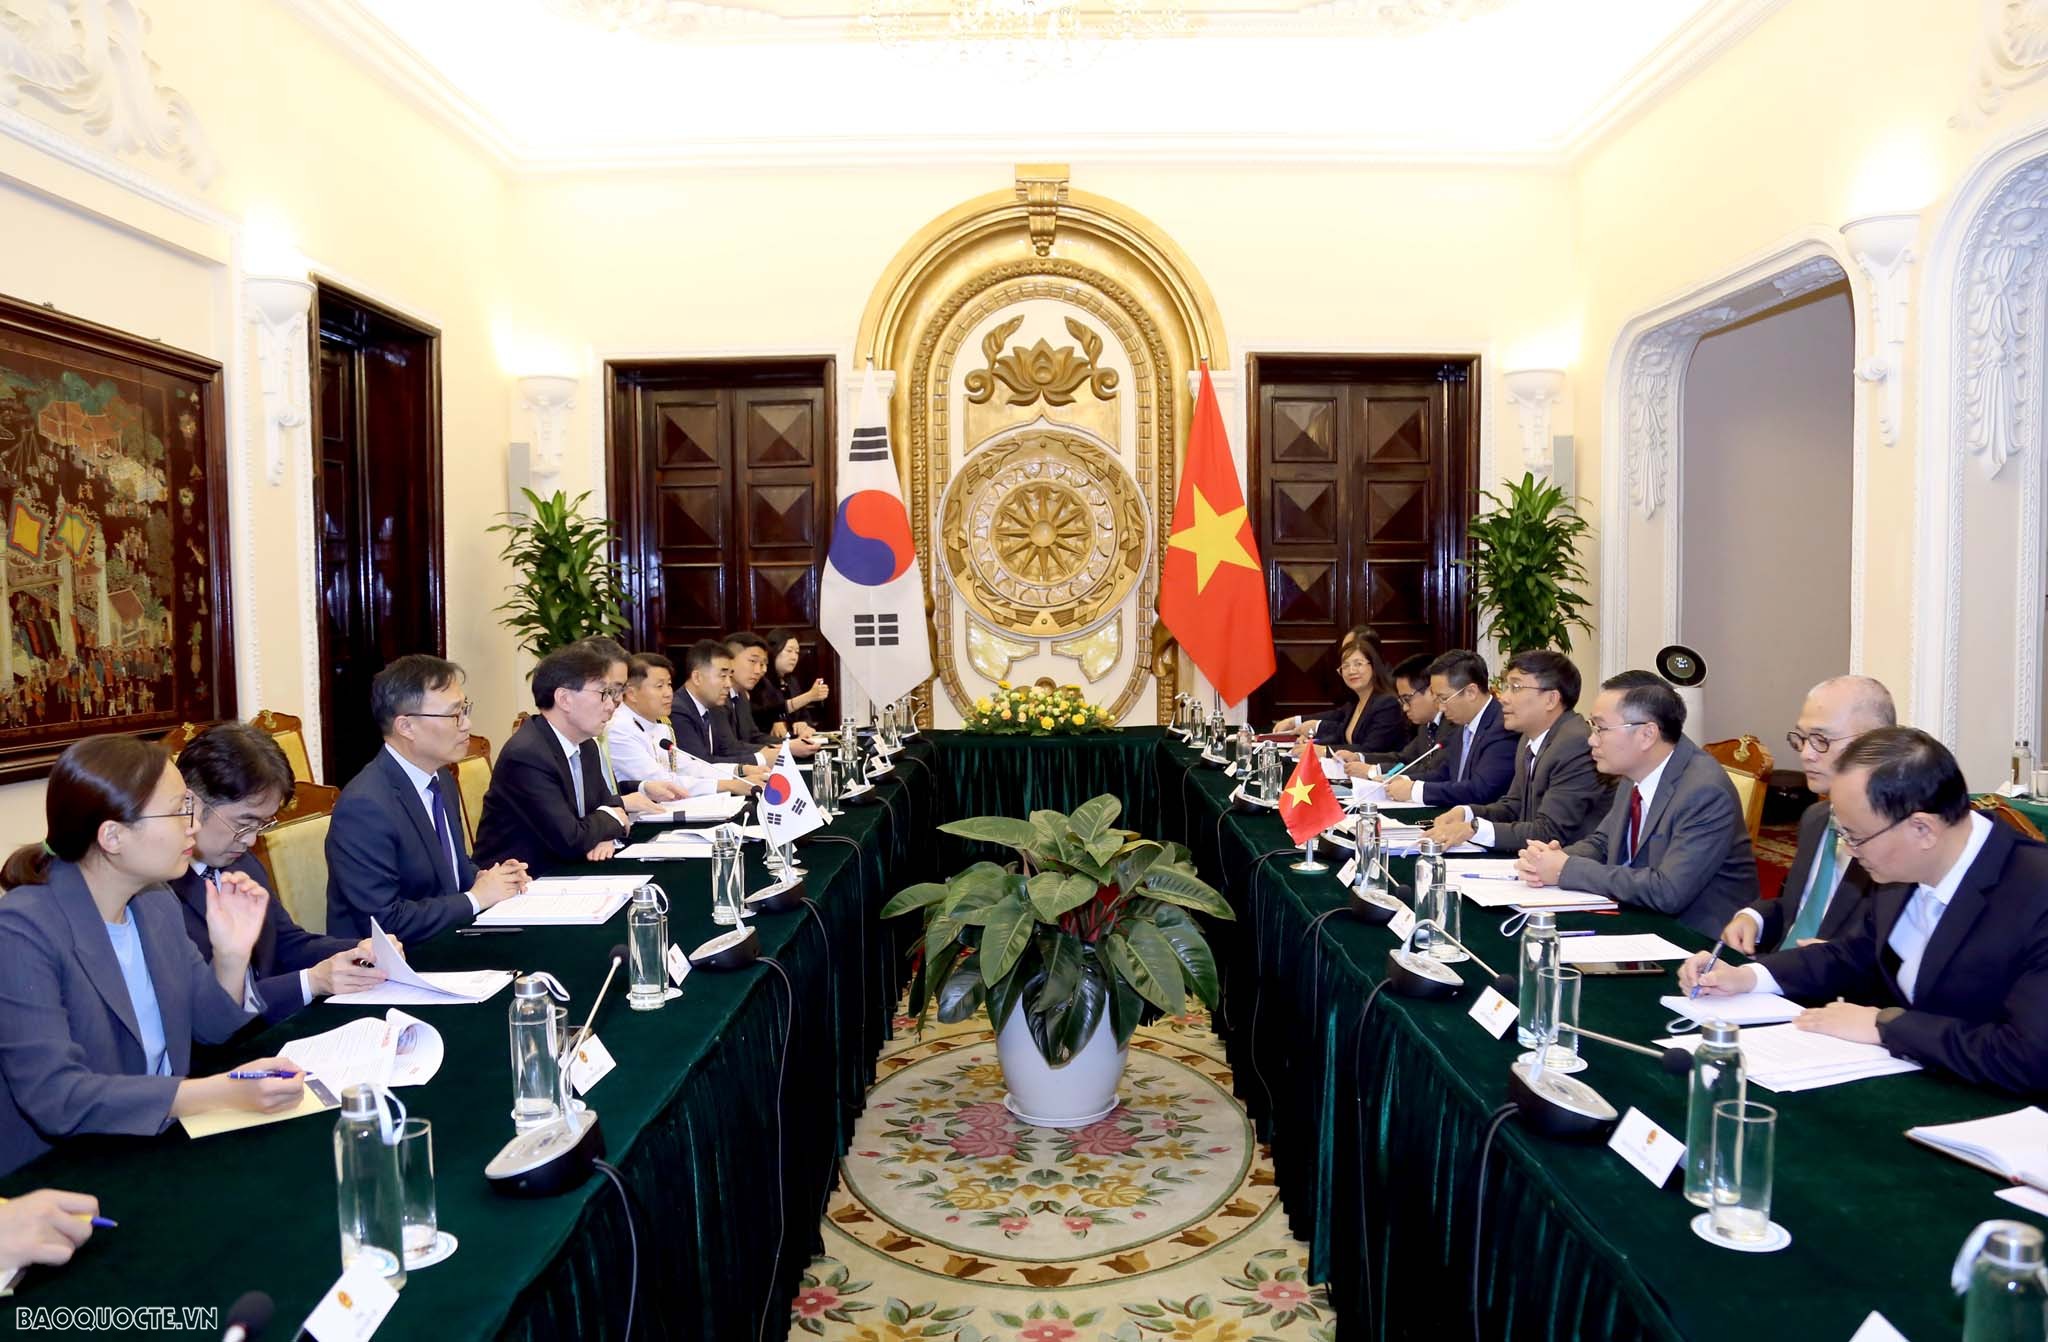 Việt Nam đóng vai trò quan trọng trong chính sách đối ngoại của Hàn Quốc